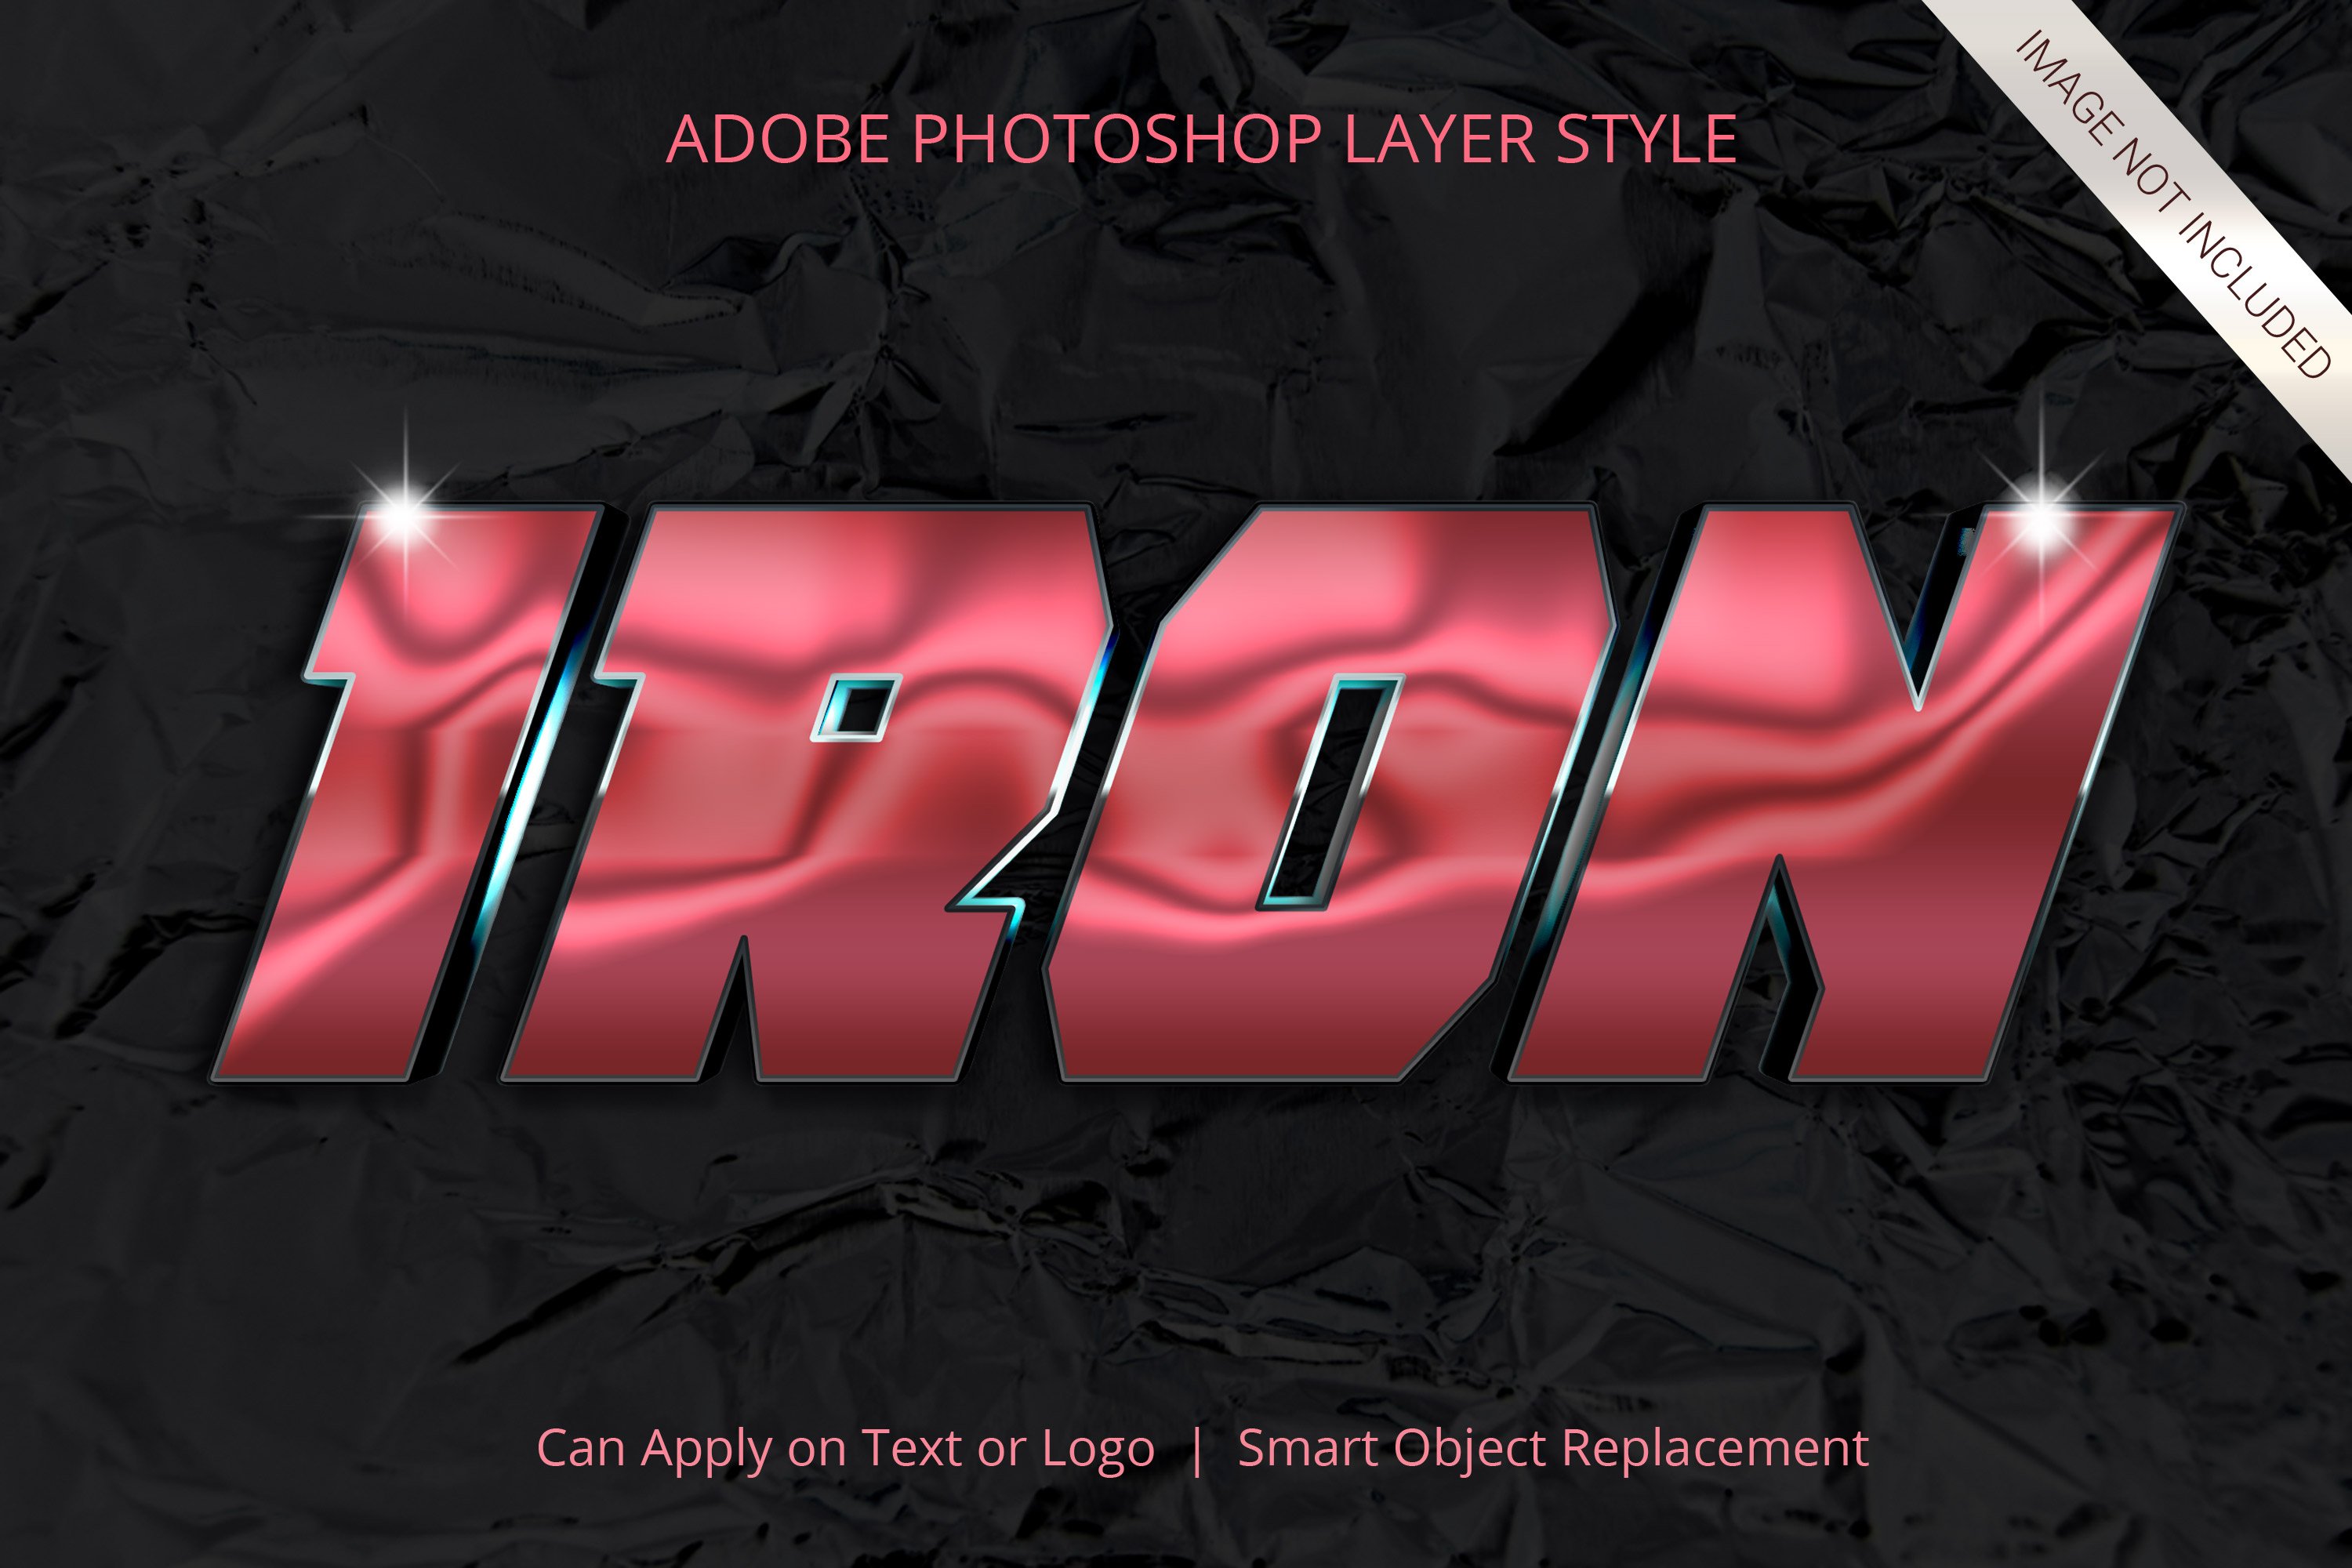 adobe photoshop text style chrome metallic 12 100